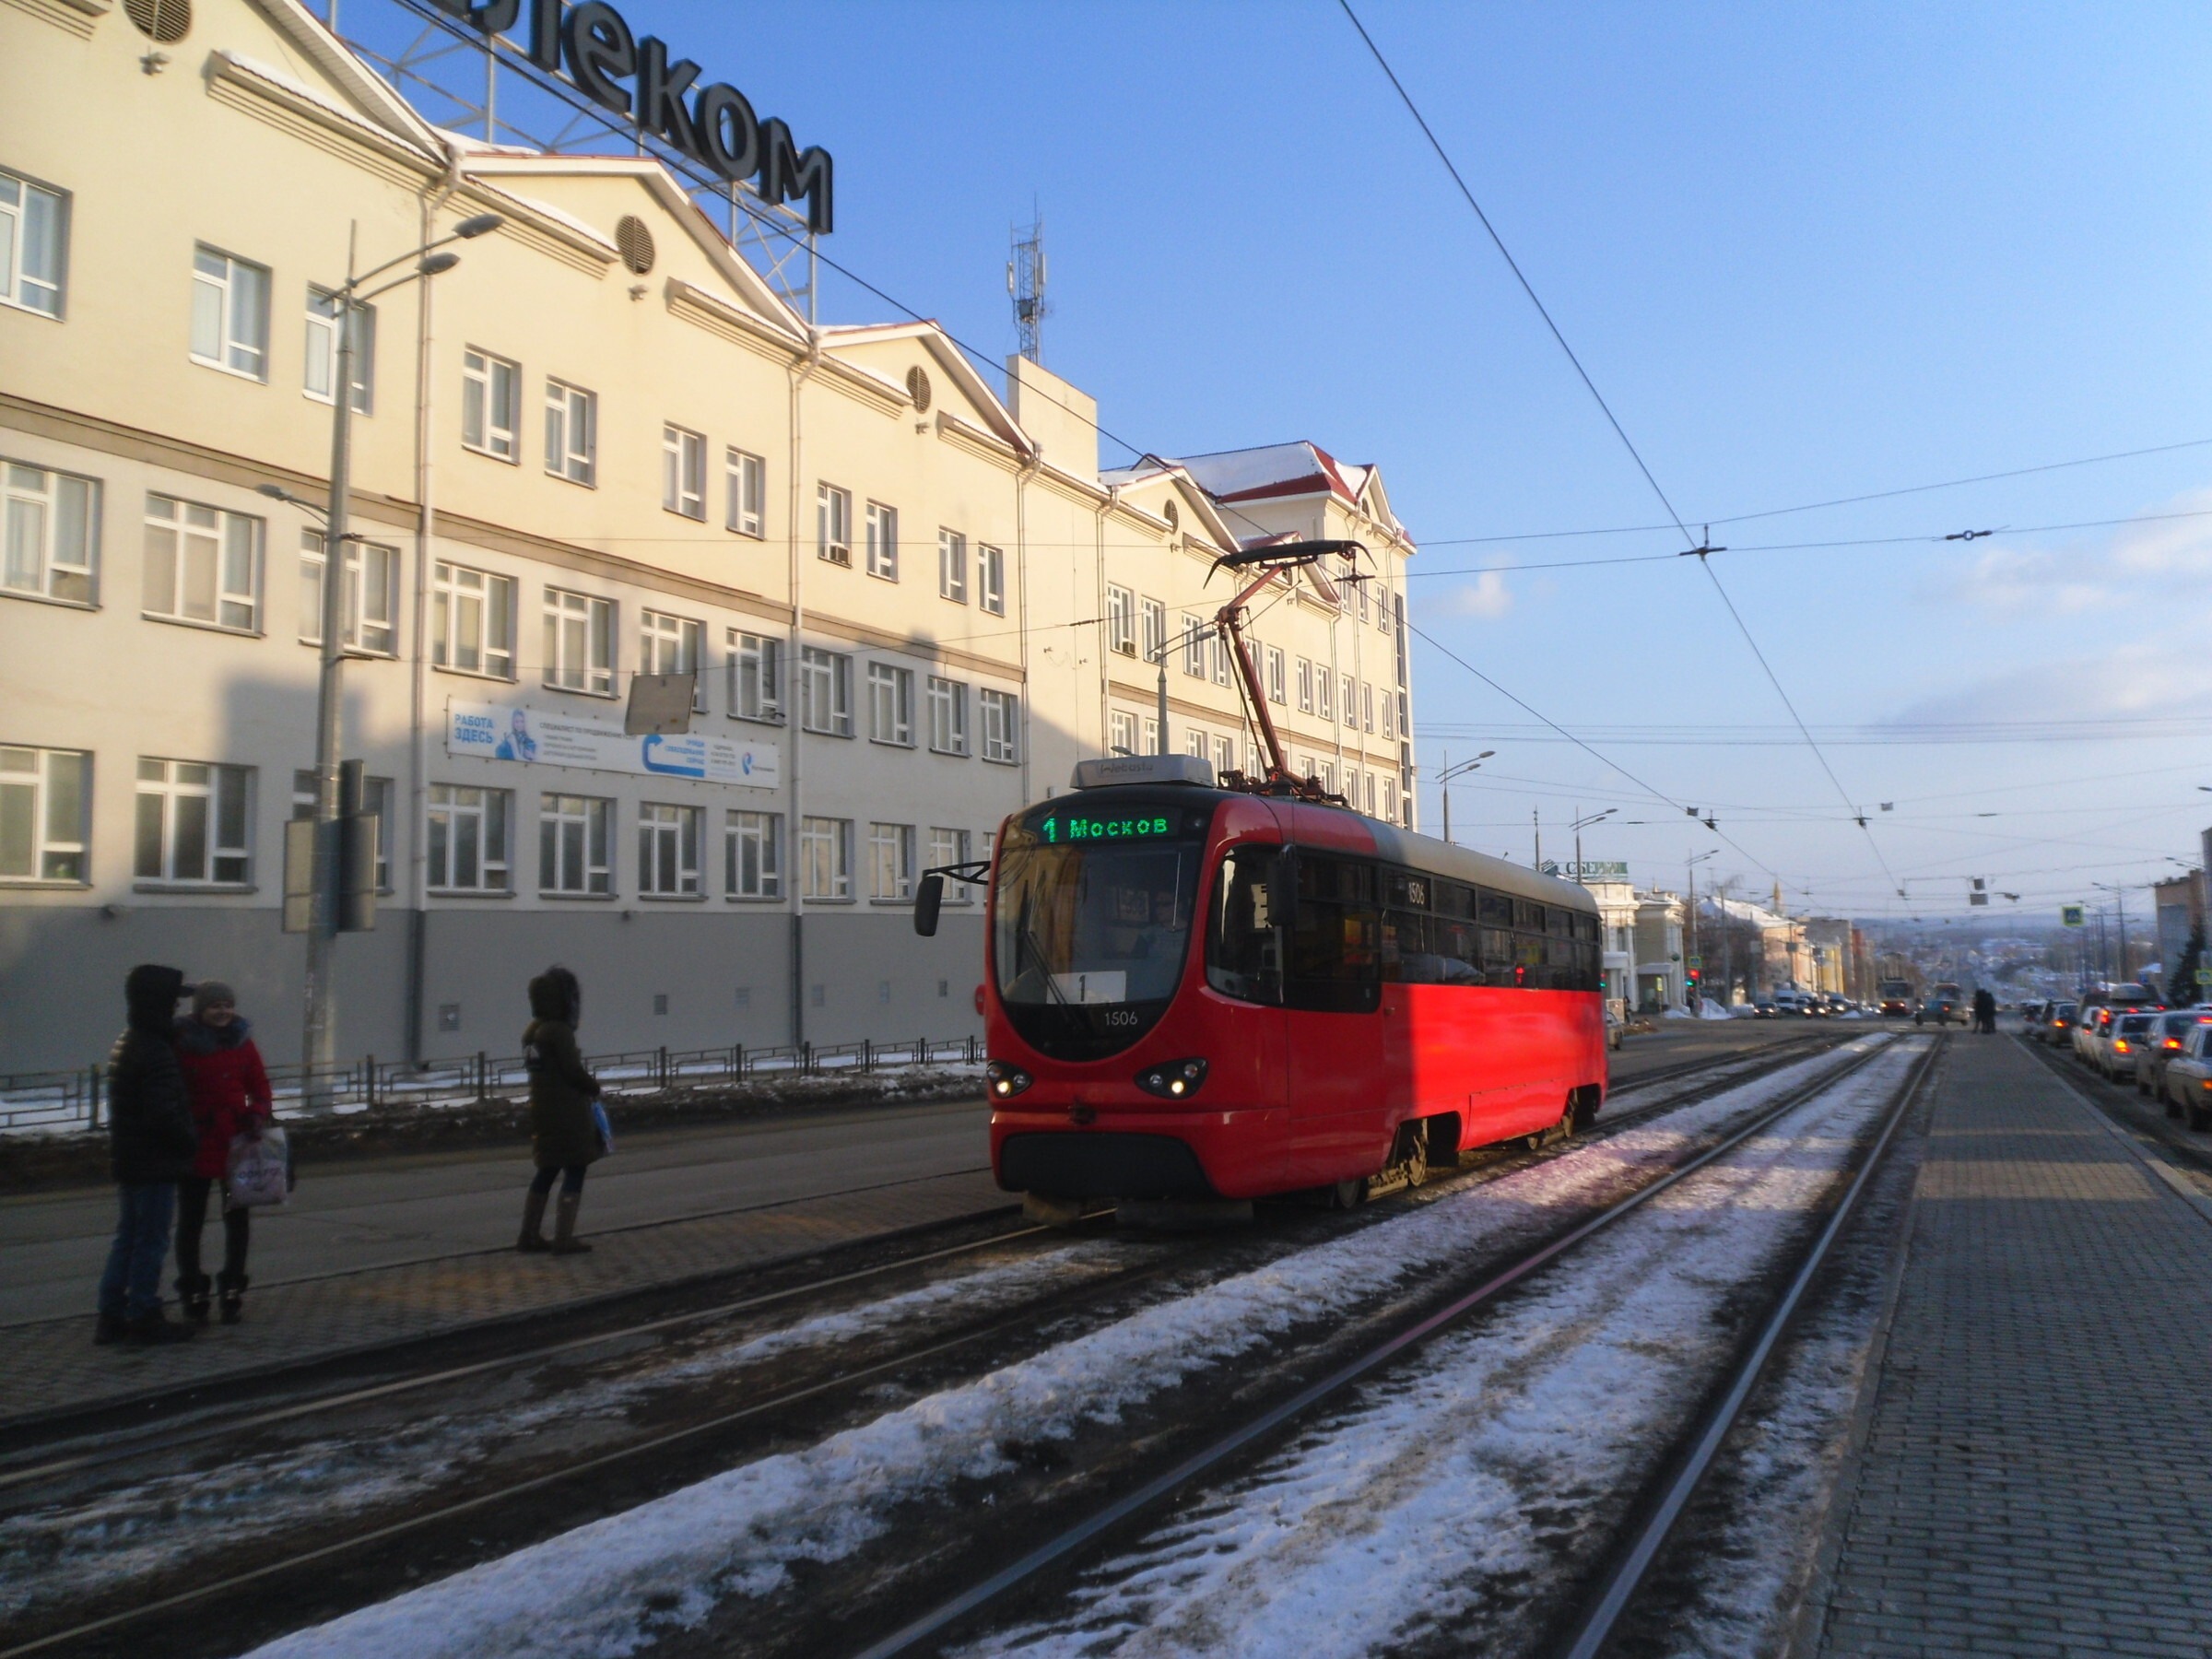 Ижевск транспорт трамвай. Транспорт Ижевск. Снежный Ижевск. Ижевск фото транспорт новый.